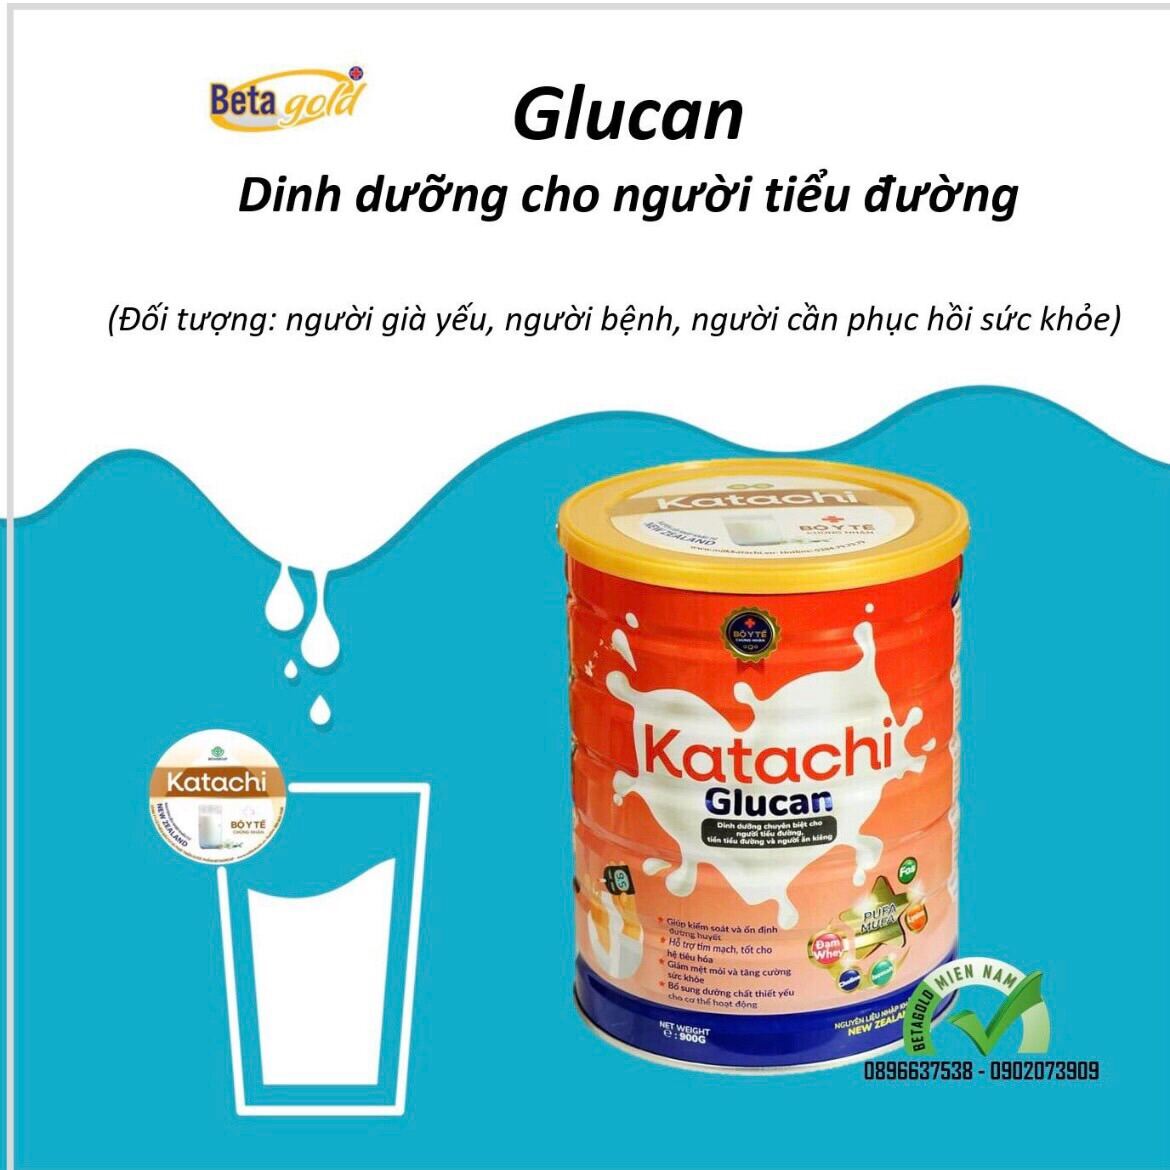 Sữa bột KATACHI GLUCAN, 900g dành cho người tiểu đường